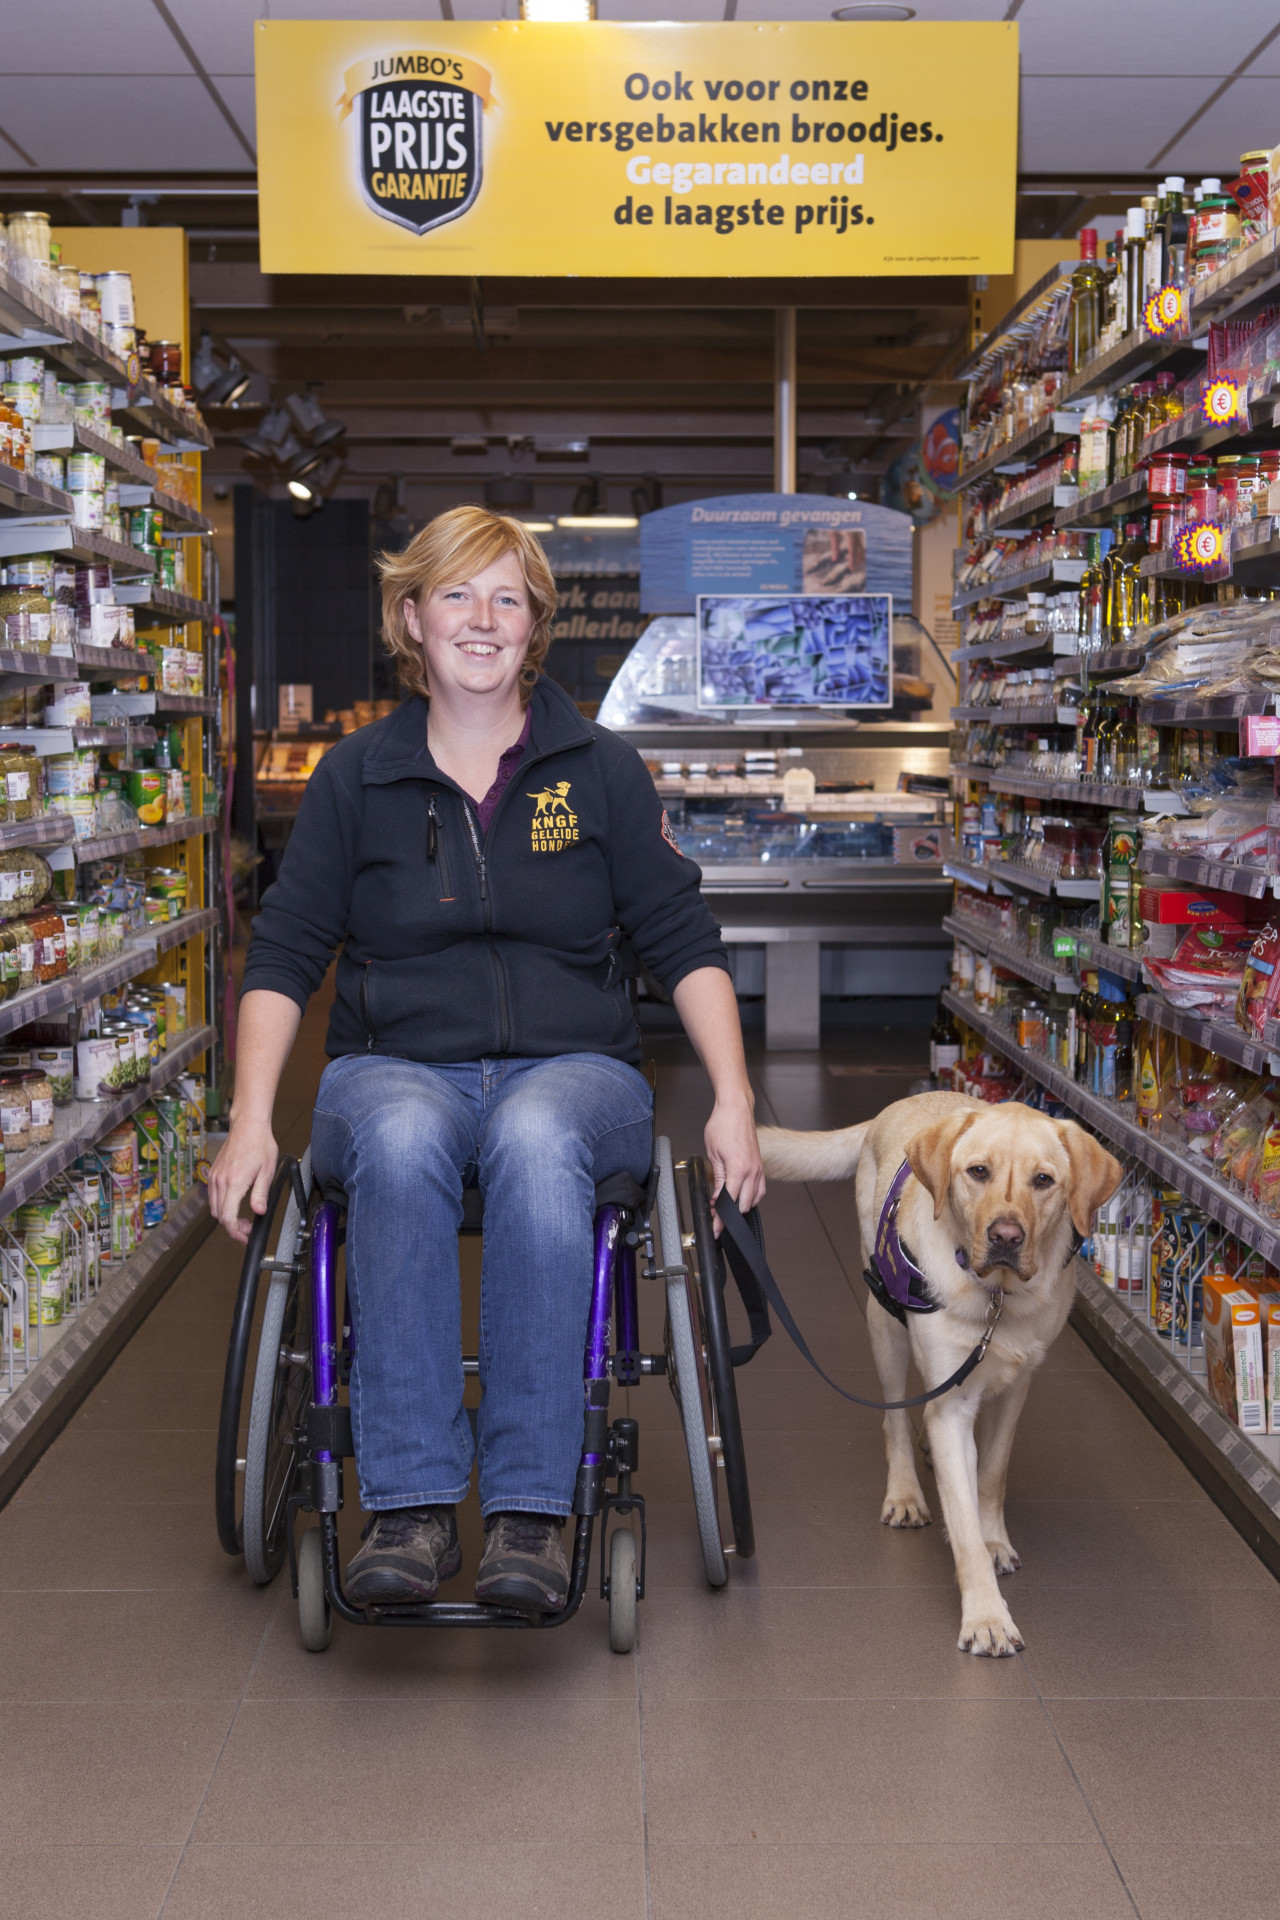 Marlouke in een rolstoel in supermarkt met assistentiehond ernaast